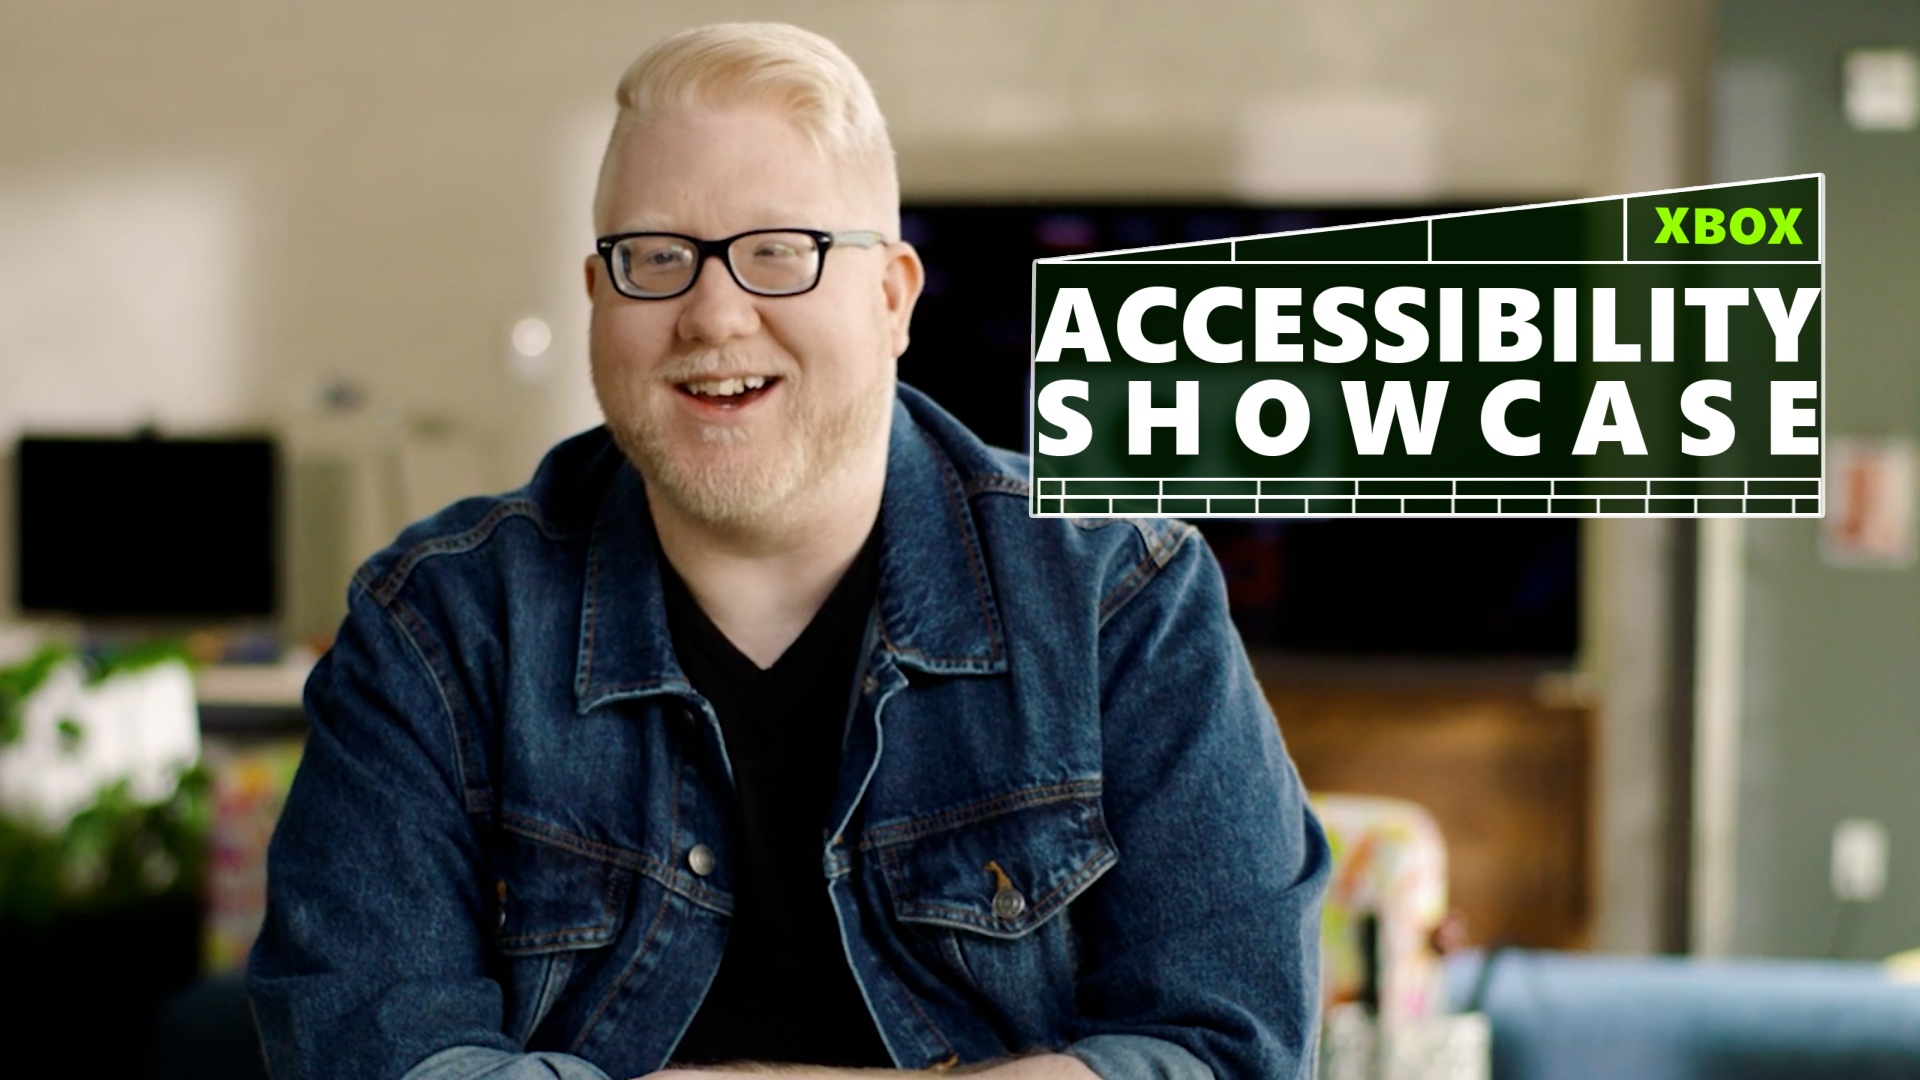 Video For Xbox célèbre la communauté des personnes en situation de handicap avec de nouvelles mises à jour dédiées à l’accessibilité